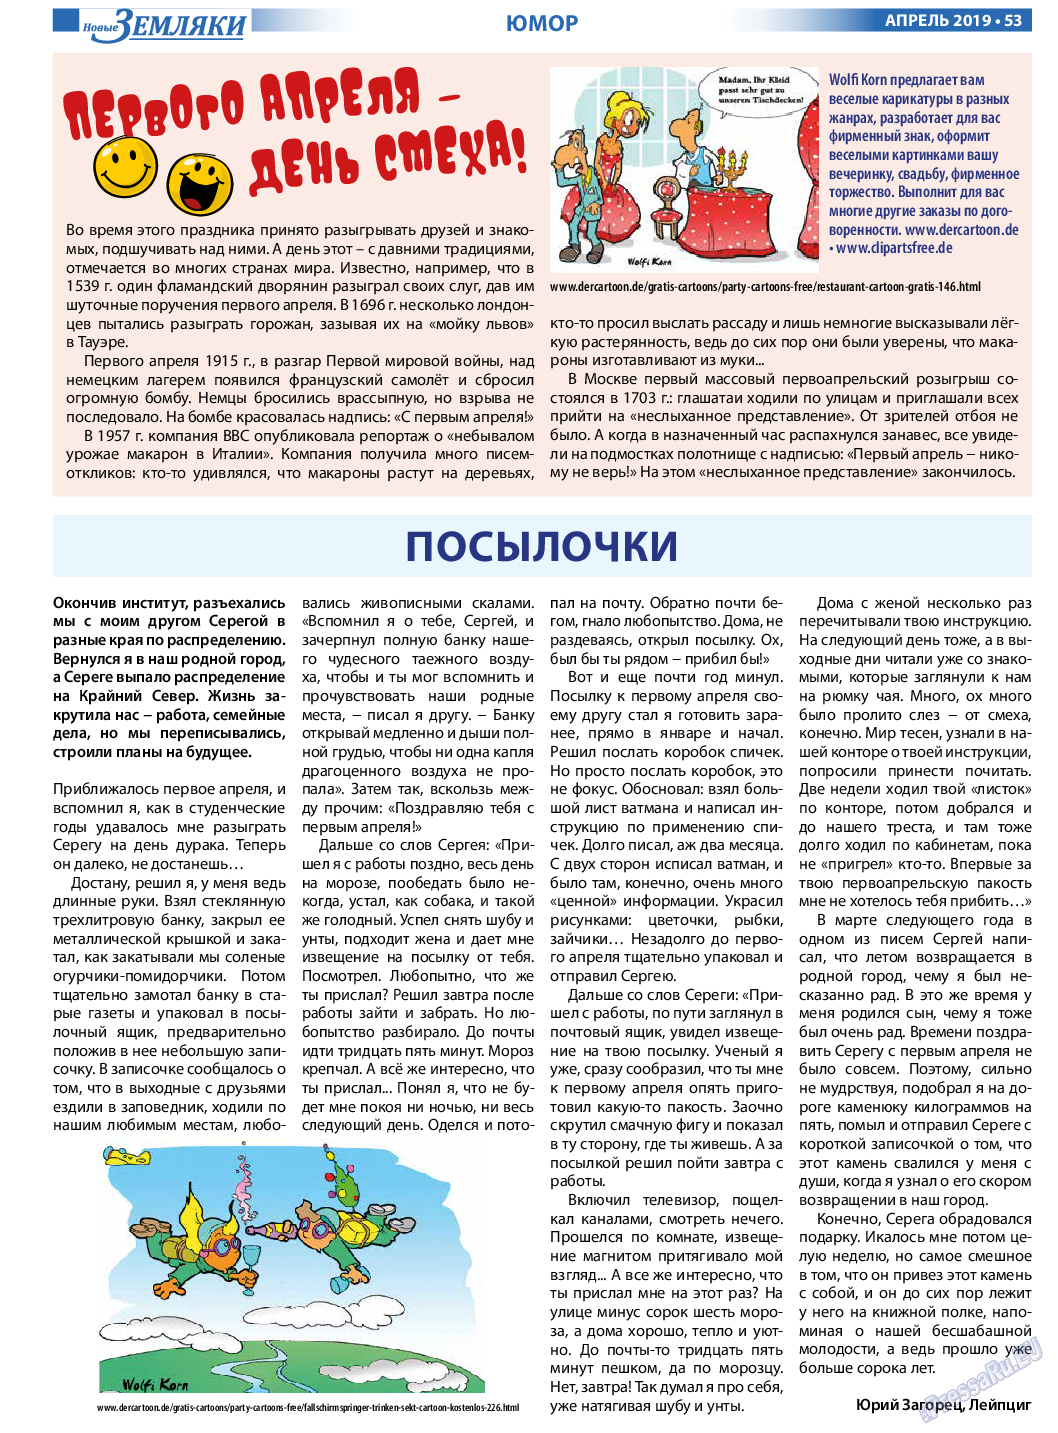 Новые Земляки, газета. 2019 №4 стр.53